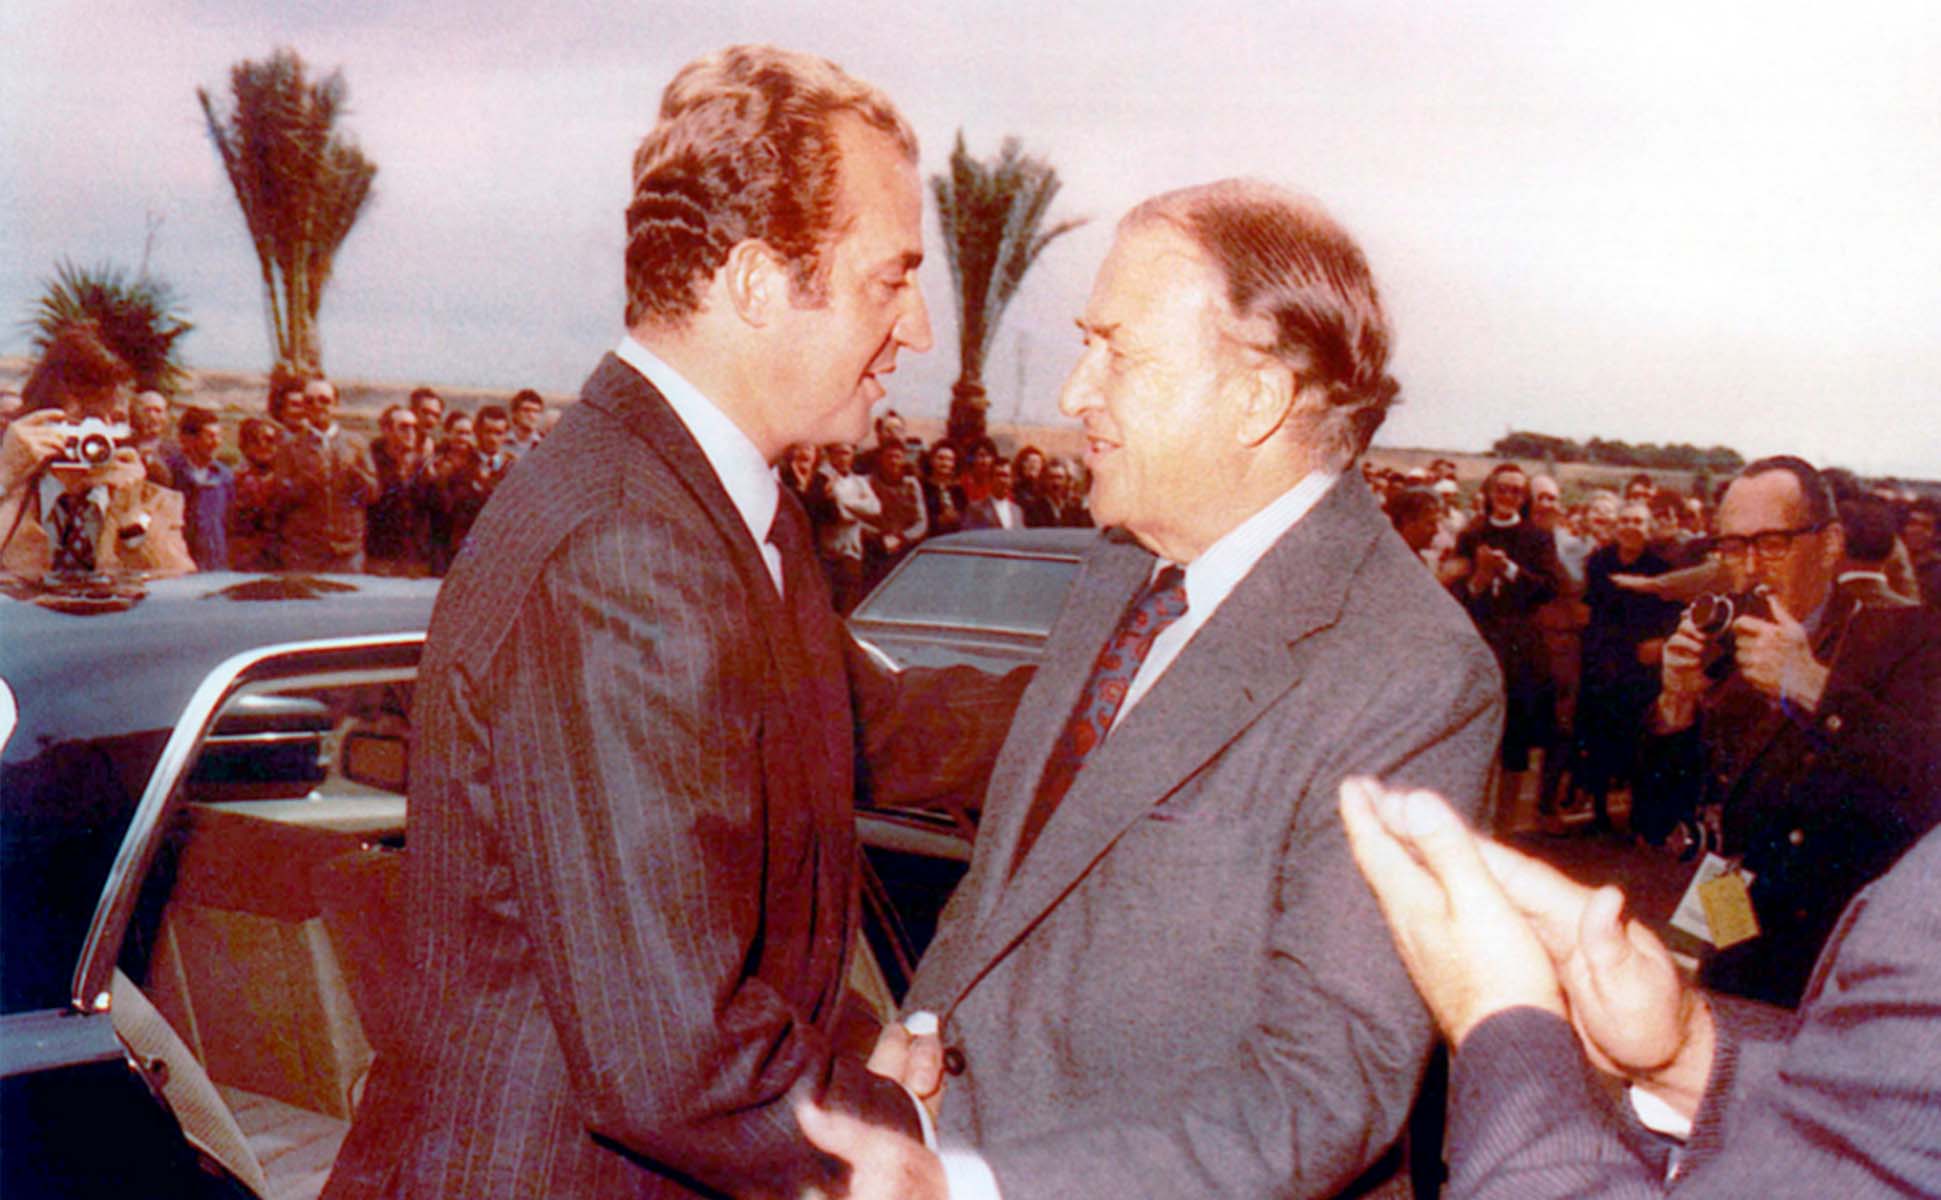 45 años de Ford en España gracias a la intervención de un Juan Carlos I |  CONCORDIA REAL ESPAÑOLA